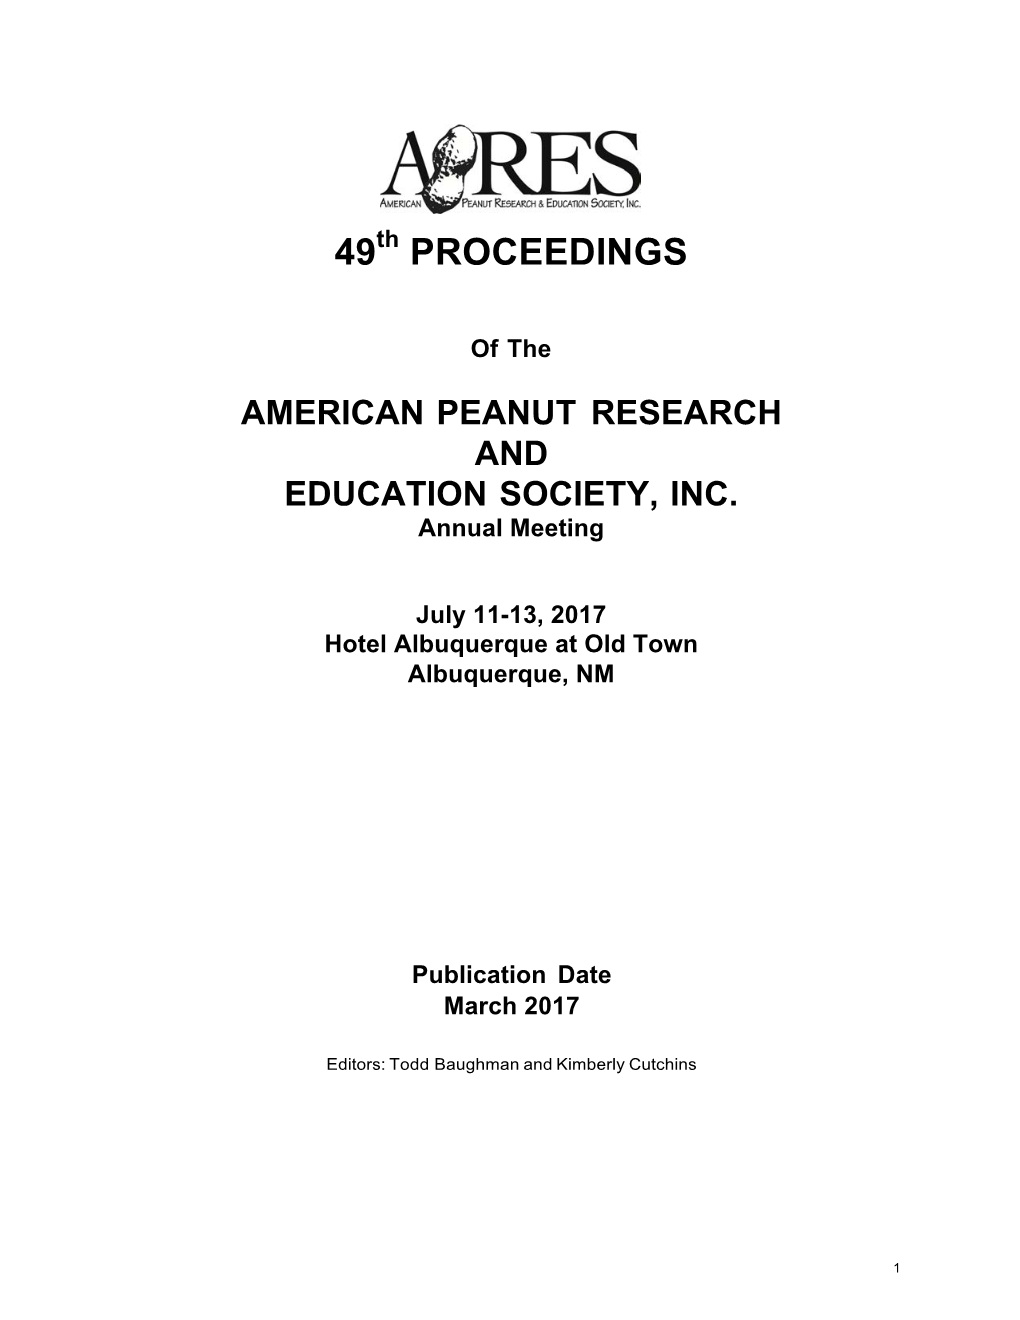 2017 APRES Proceedings, Albuquerque, NM